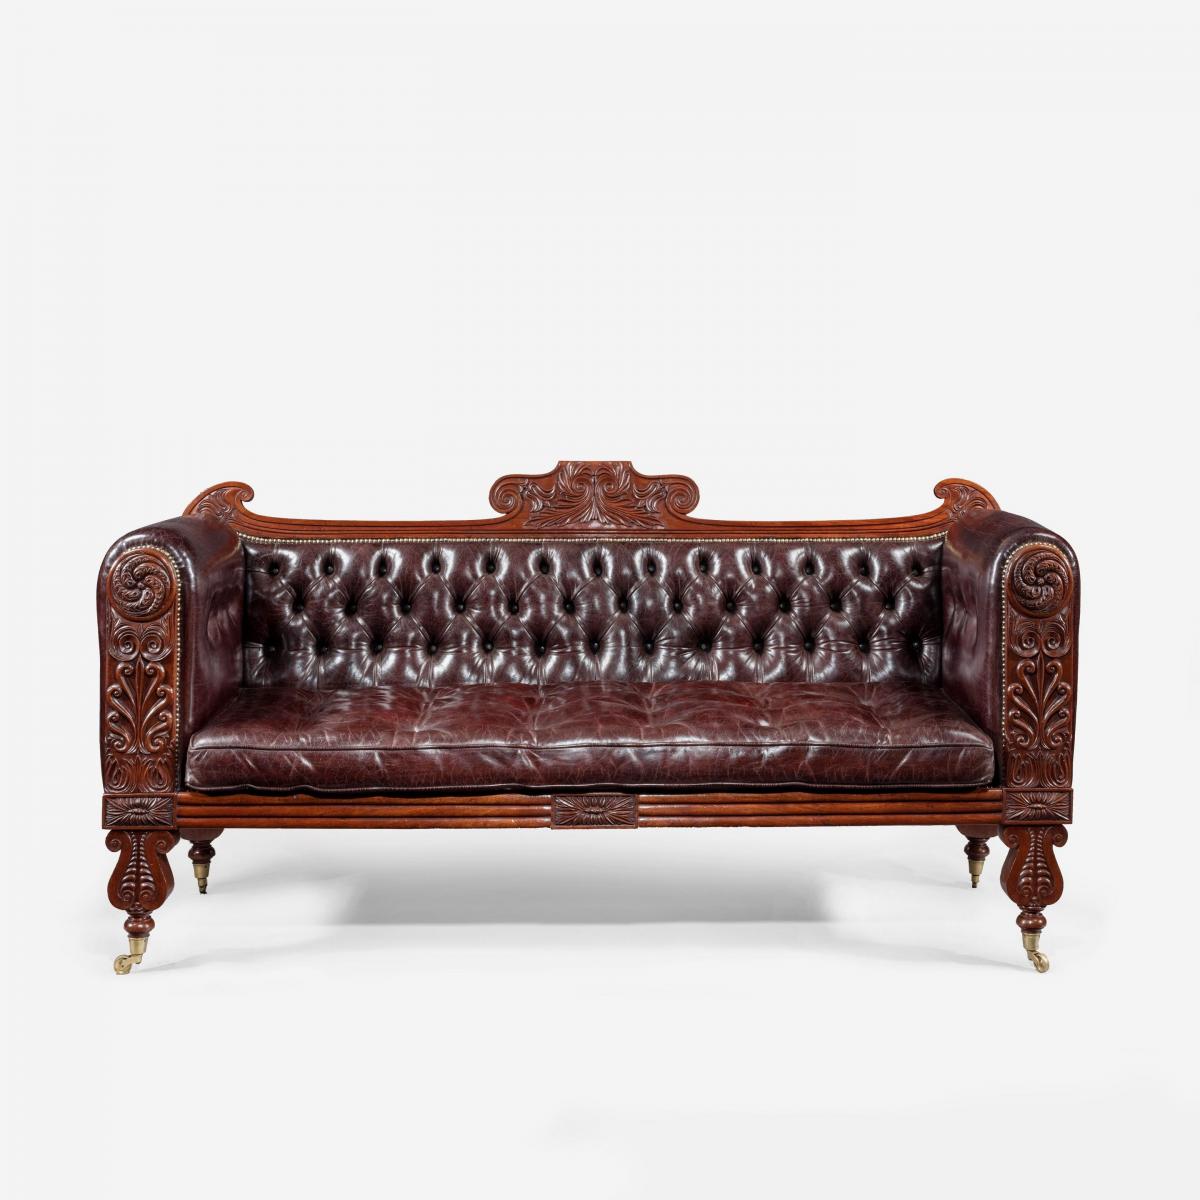 A Regency Mahogany Sofa